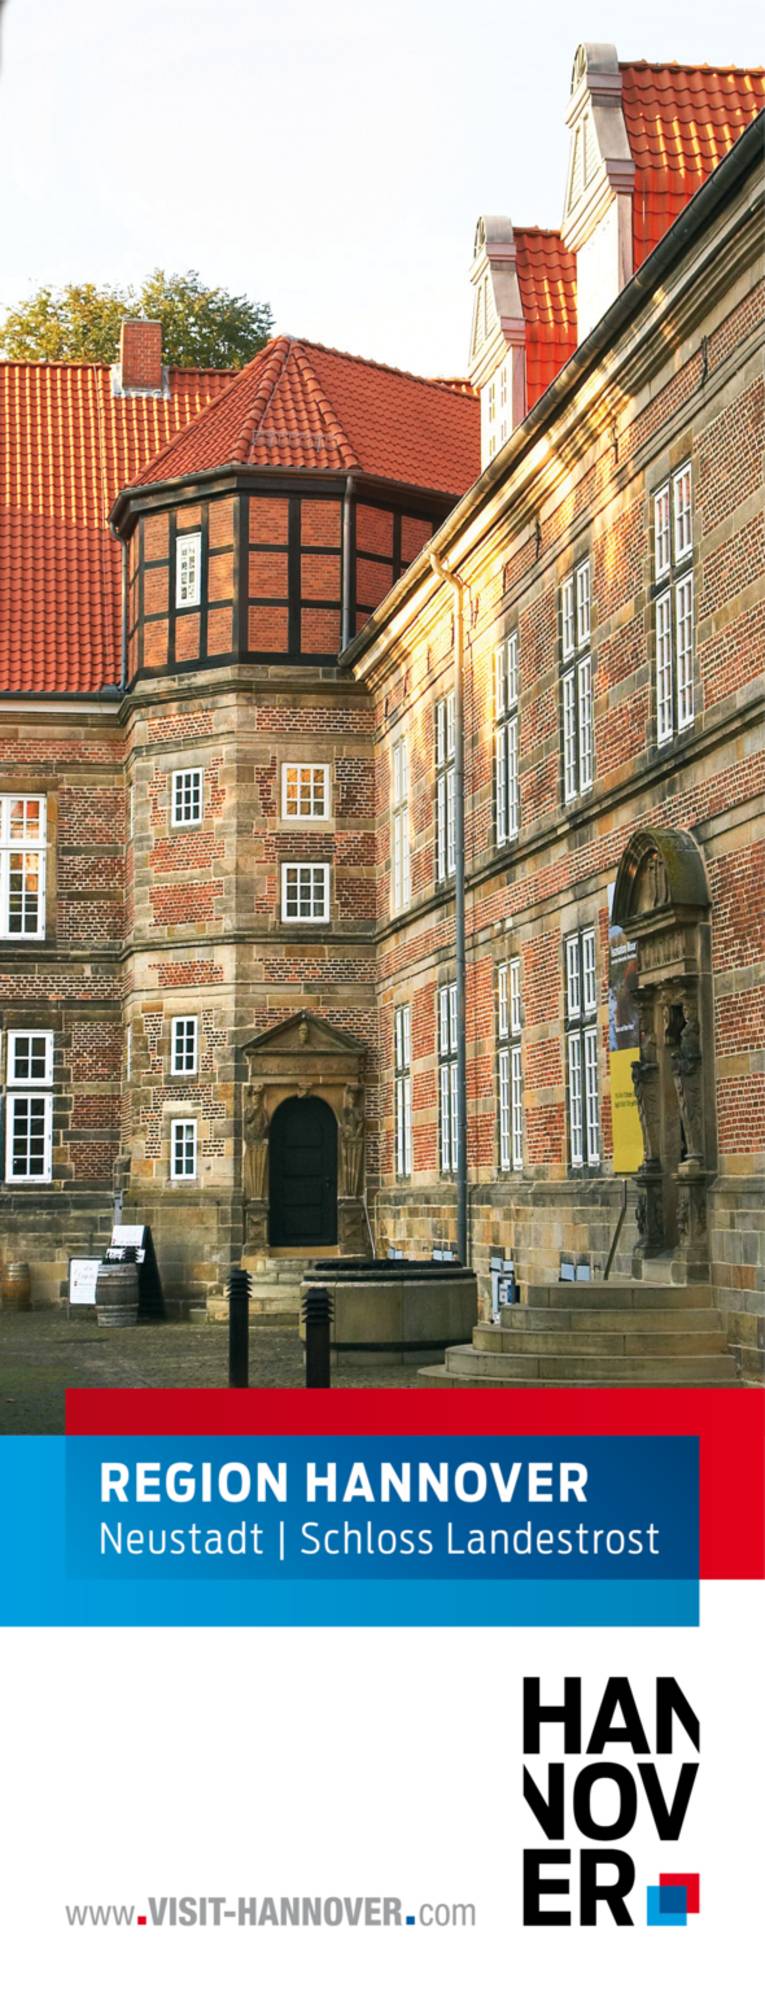 Neustadt am Rübenberge präsentiert sich mit einem Motiv des Schloss Landestrost.